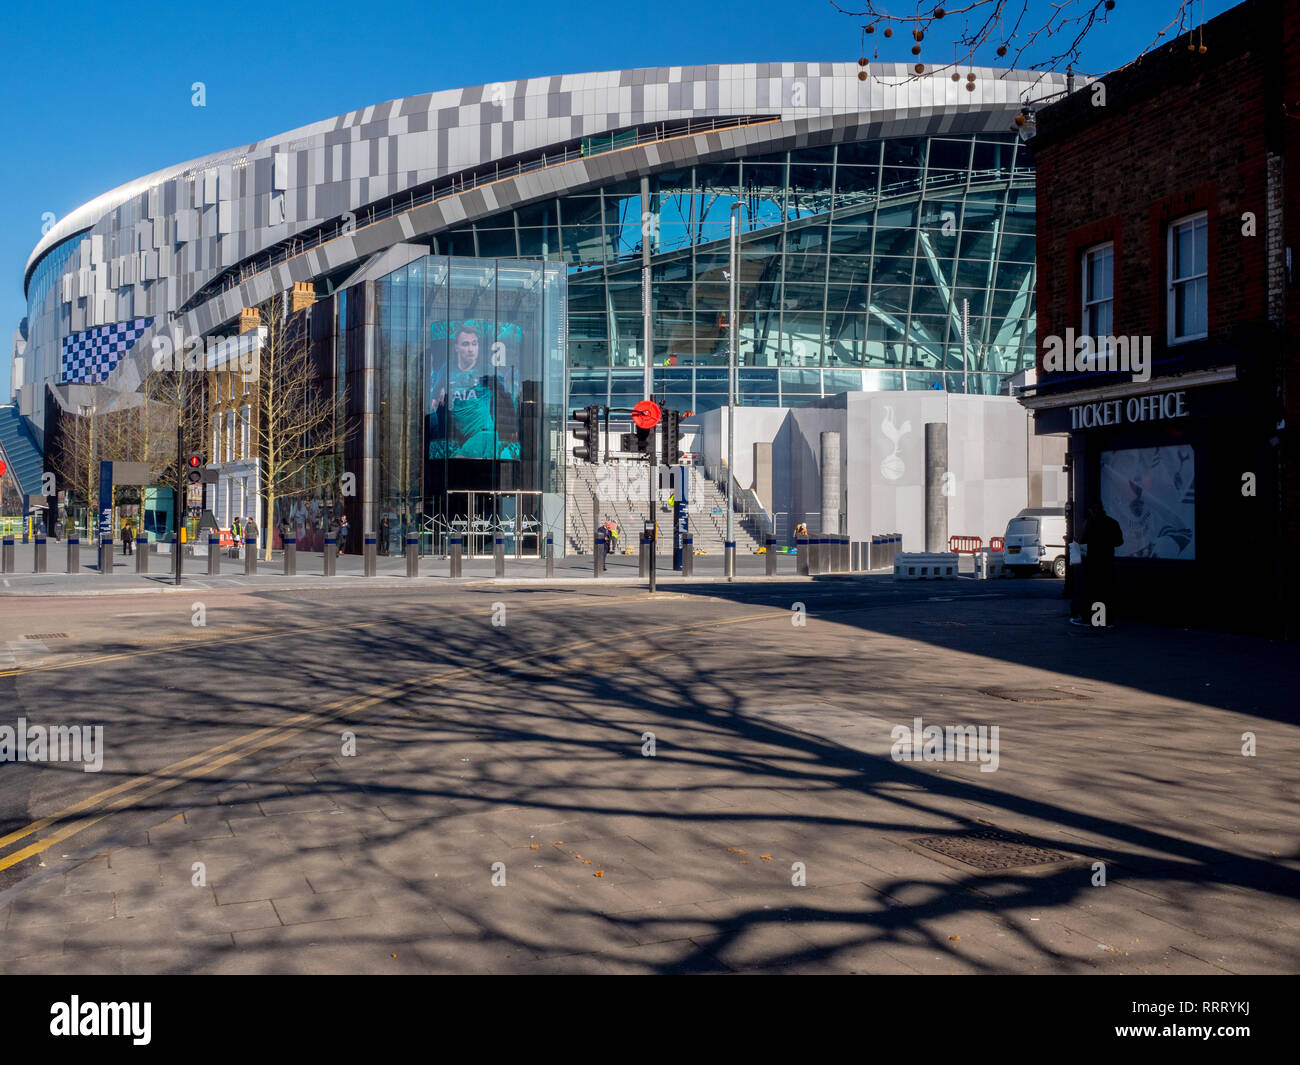 El nuevo Tottenham Hotspur FC (Spurs) estadio del norte suburbio de Londres. Foto de stock